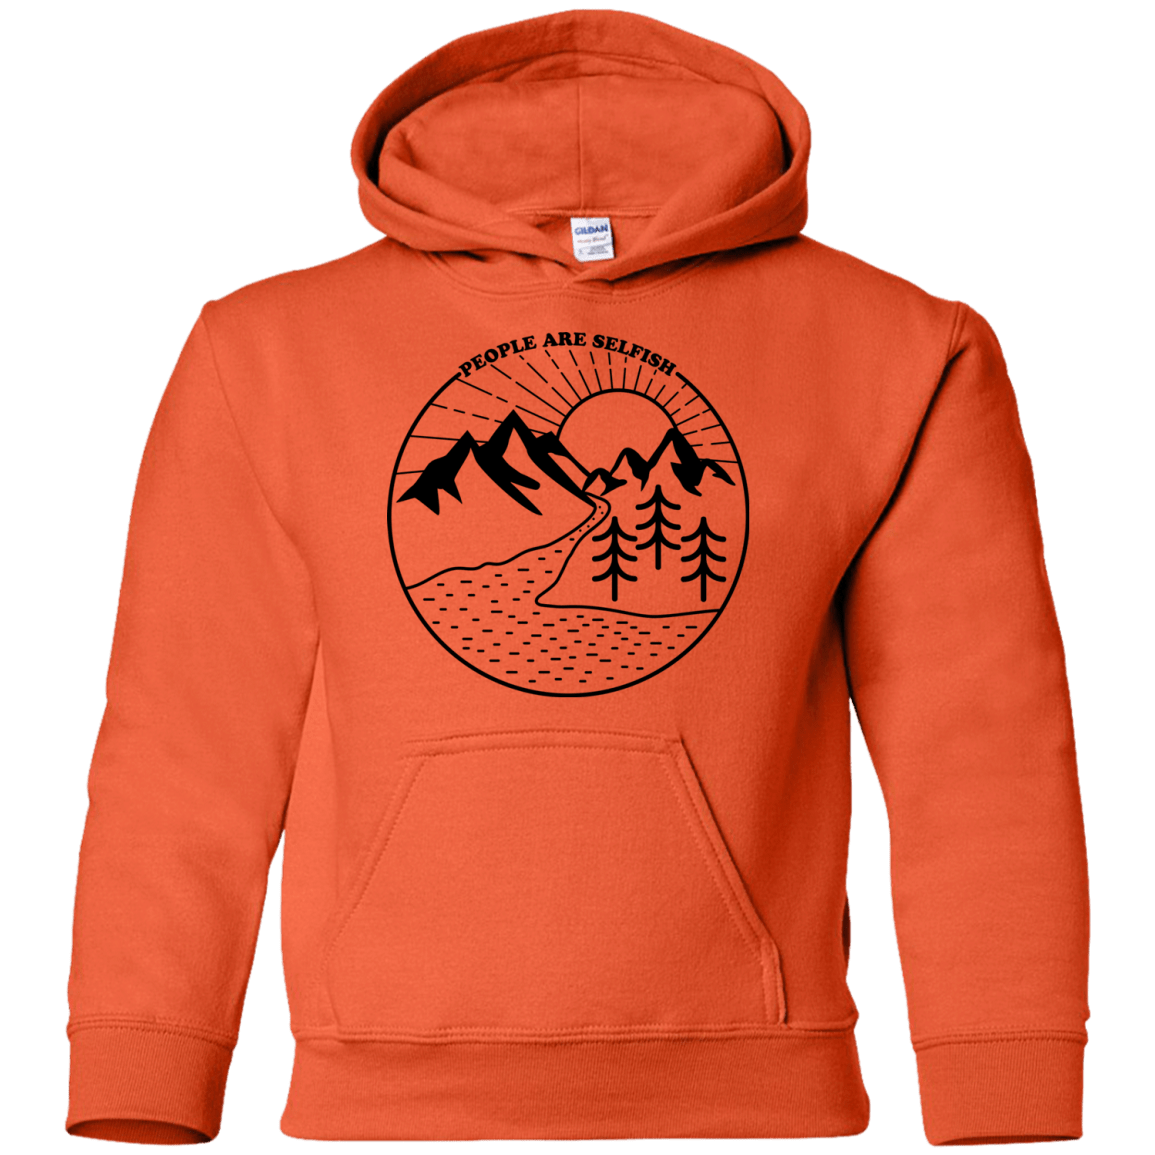 Sweatshirts Nature vs. People Youth Hoodie